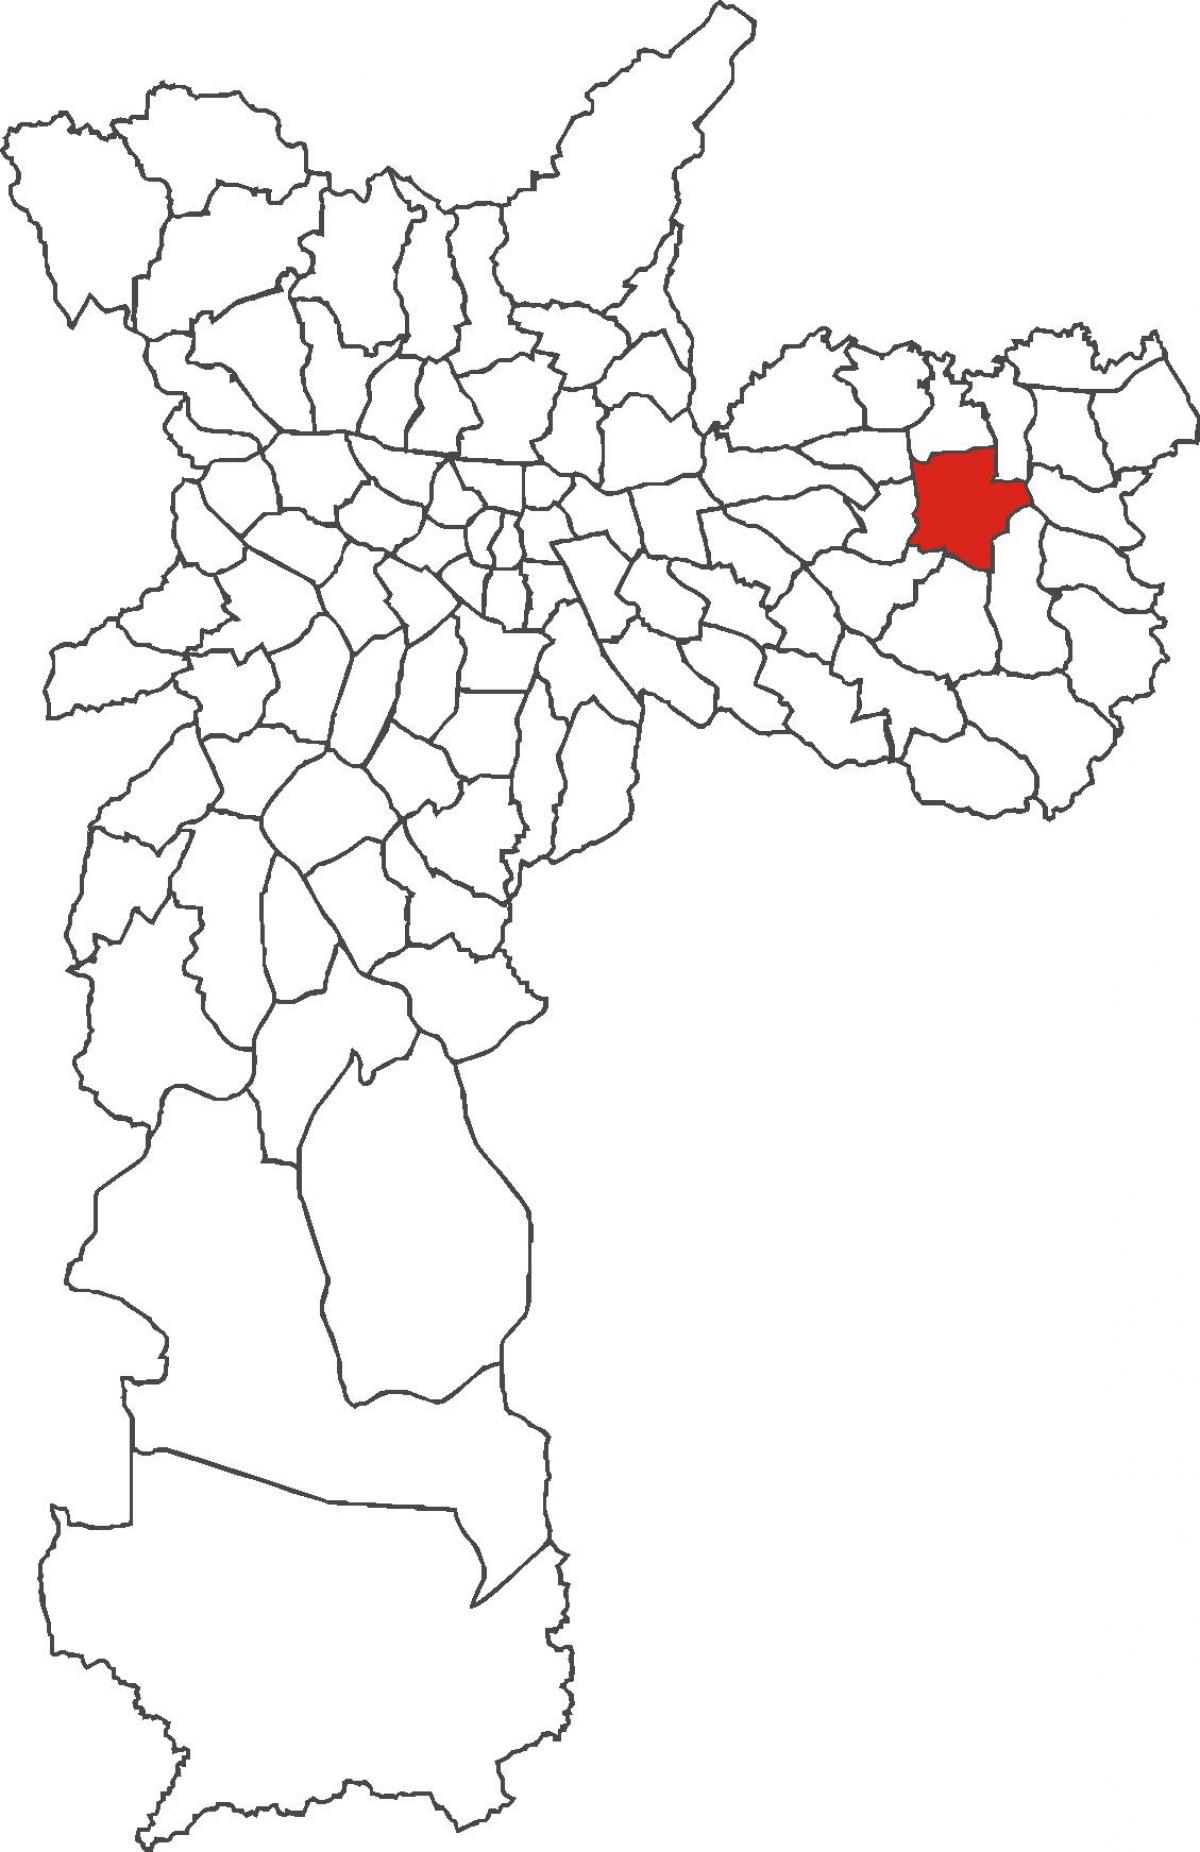 Mapa do bairro de Itaquera